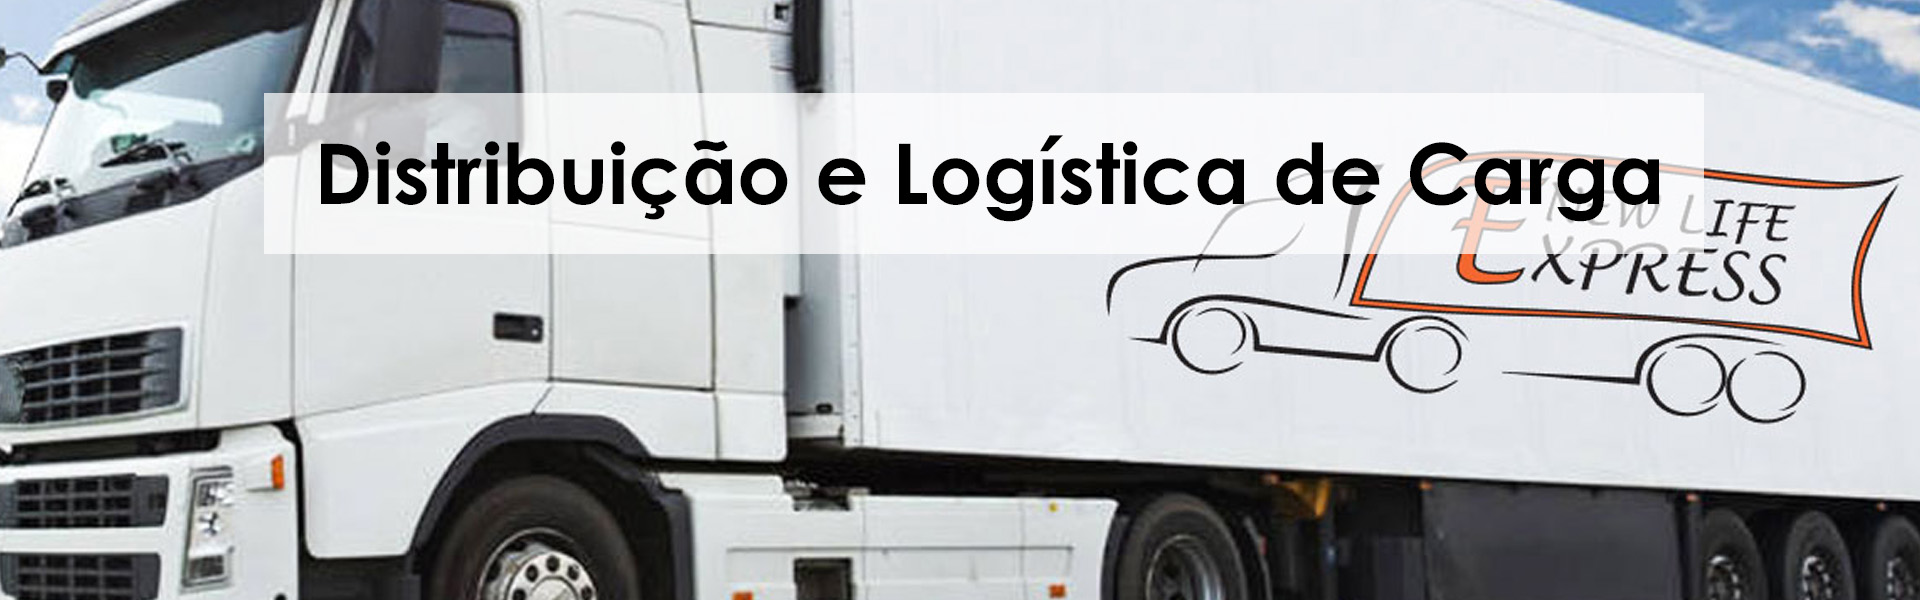 distribuição e logística de cargas em sao paulo